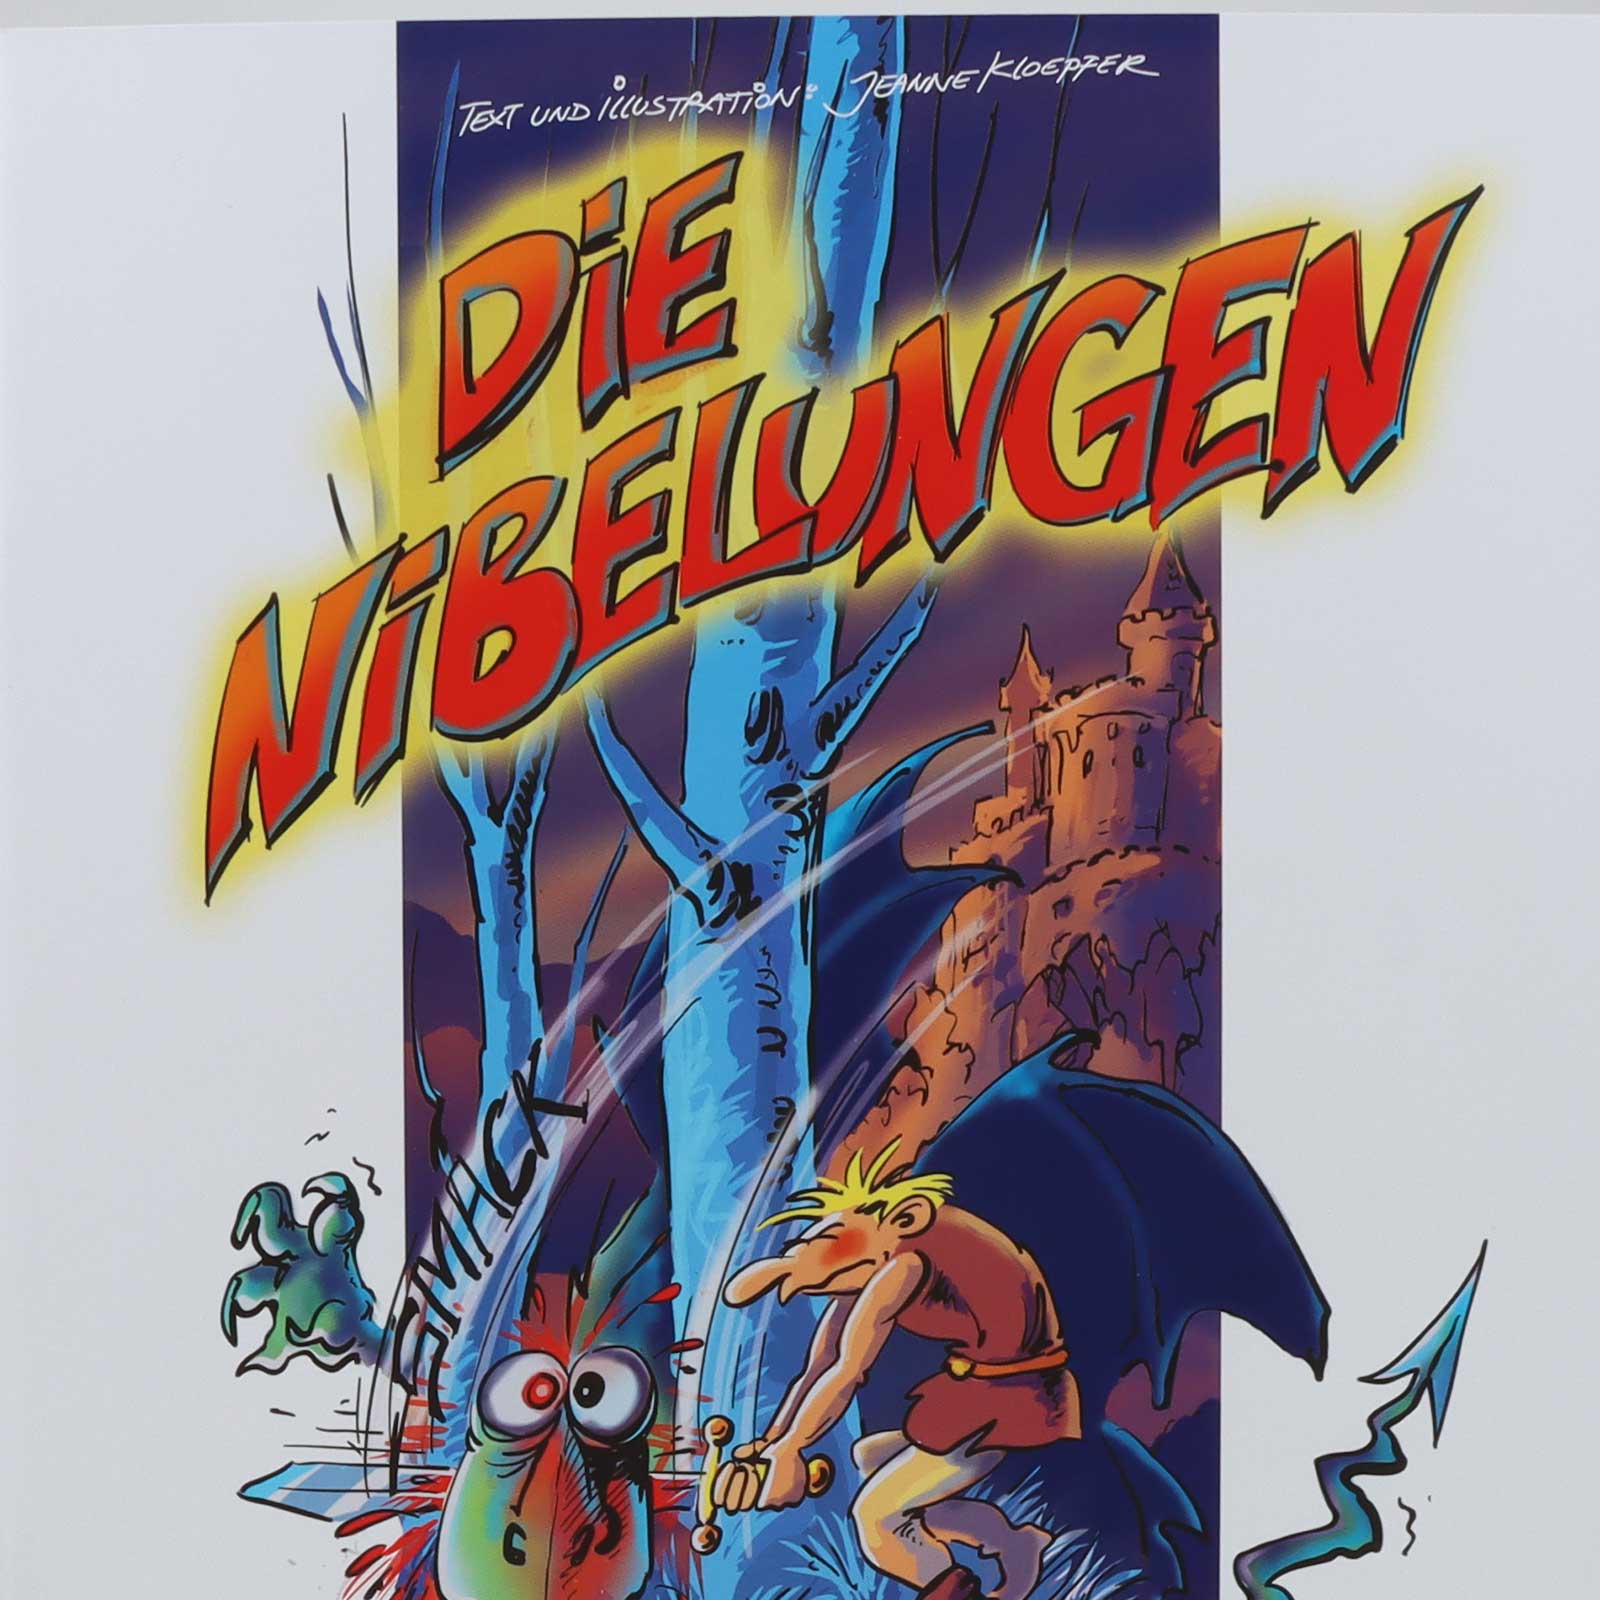 Nibelungencomic-Detailbild.jpg